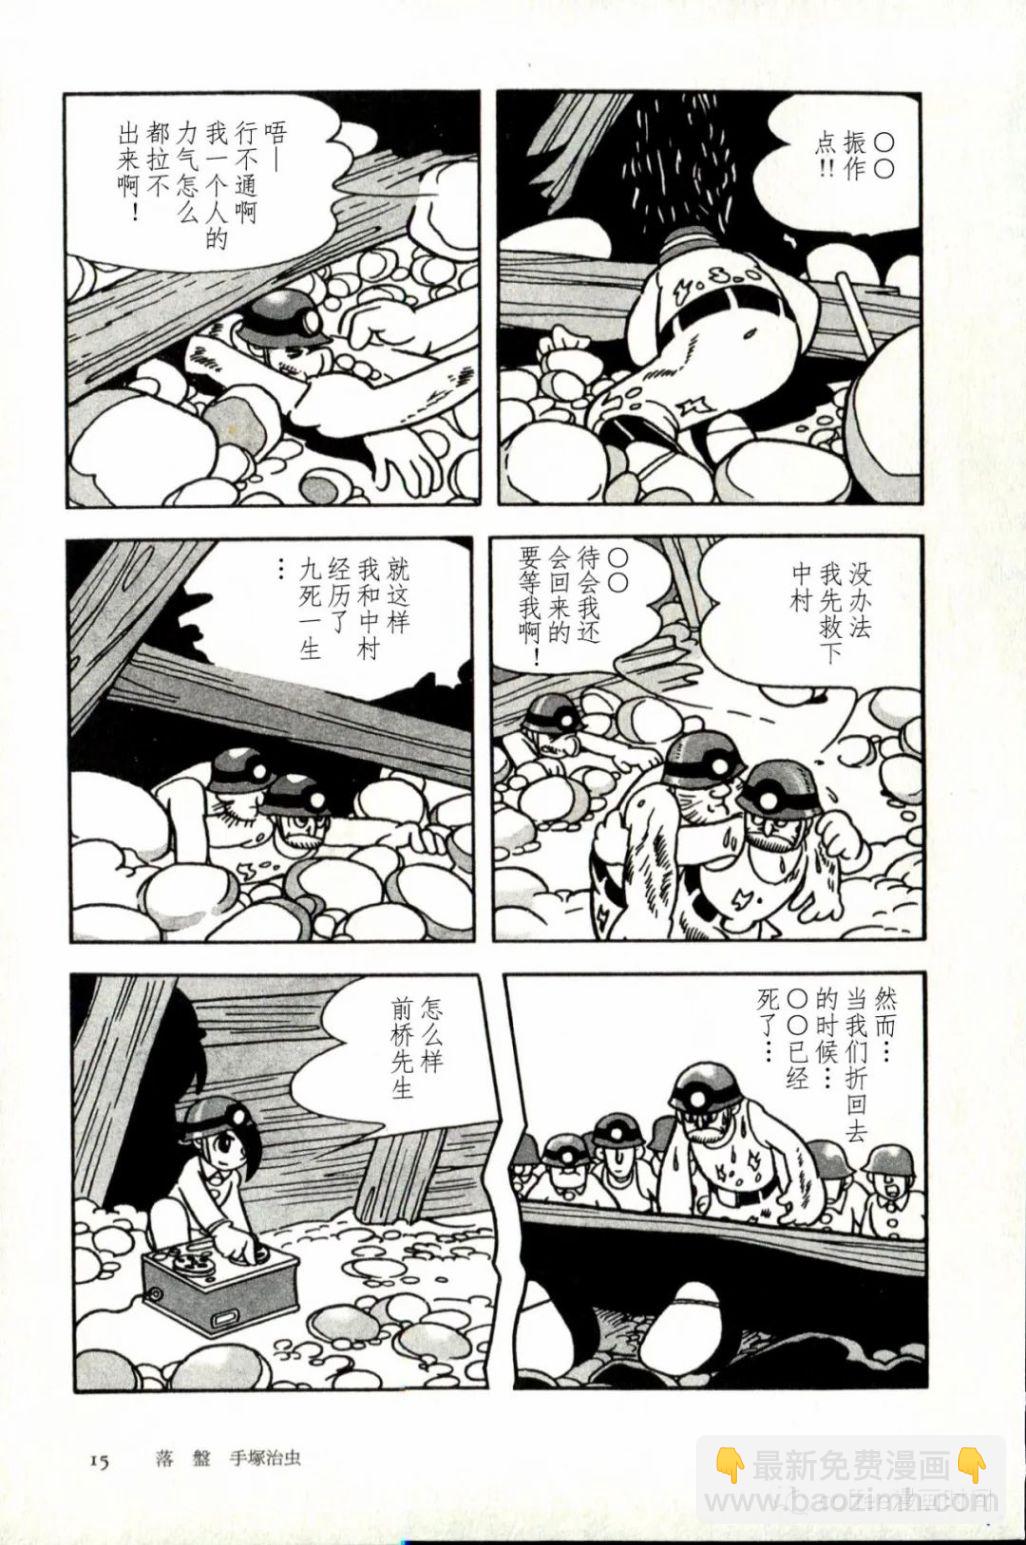 日本短篇漫畫傑作集 - 手冢治虫《落盤》 - 1